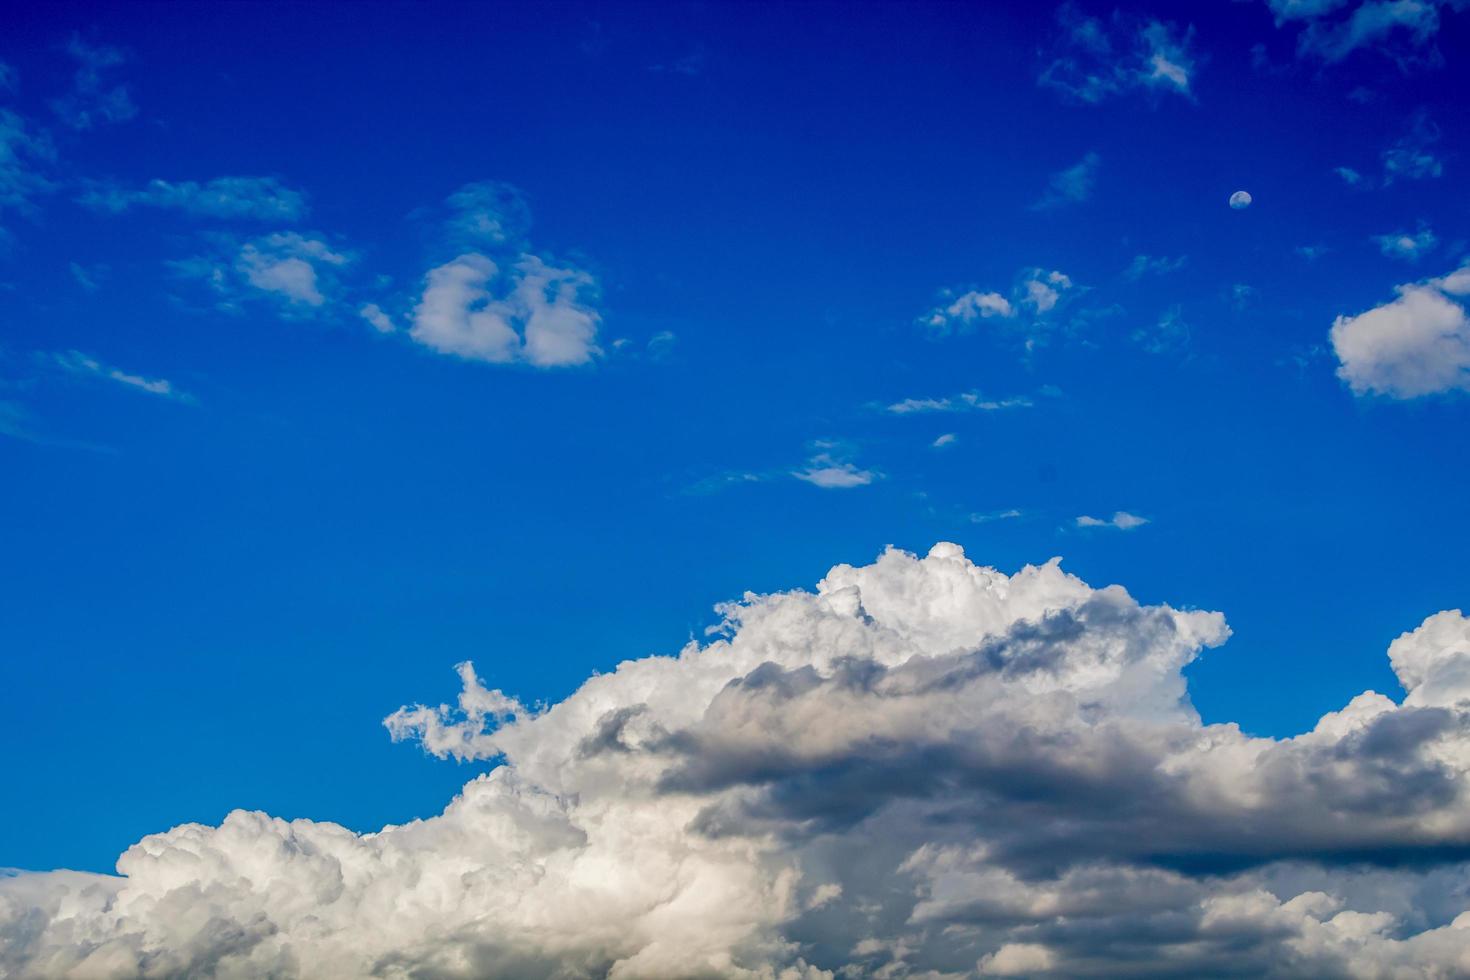 le timelapse d'image de beaux nuages de pluie se déplaçant continuellement. , fond bleu ciel photo